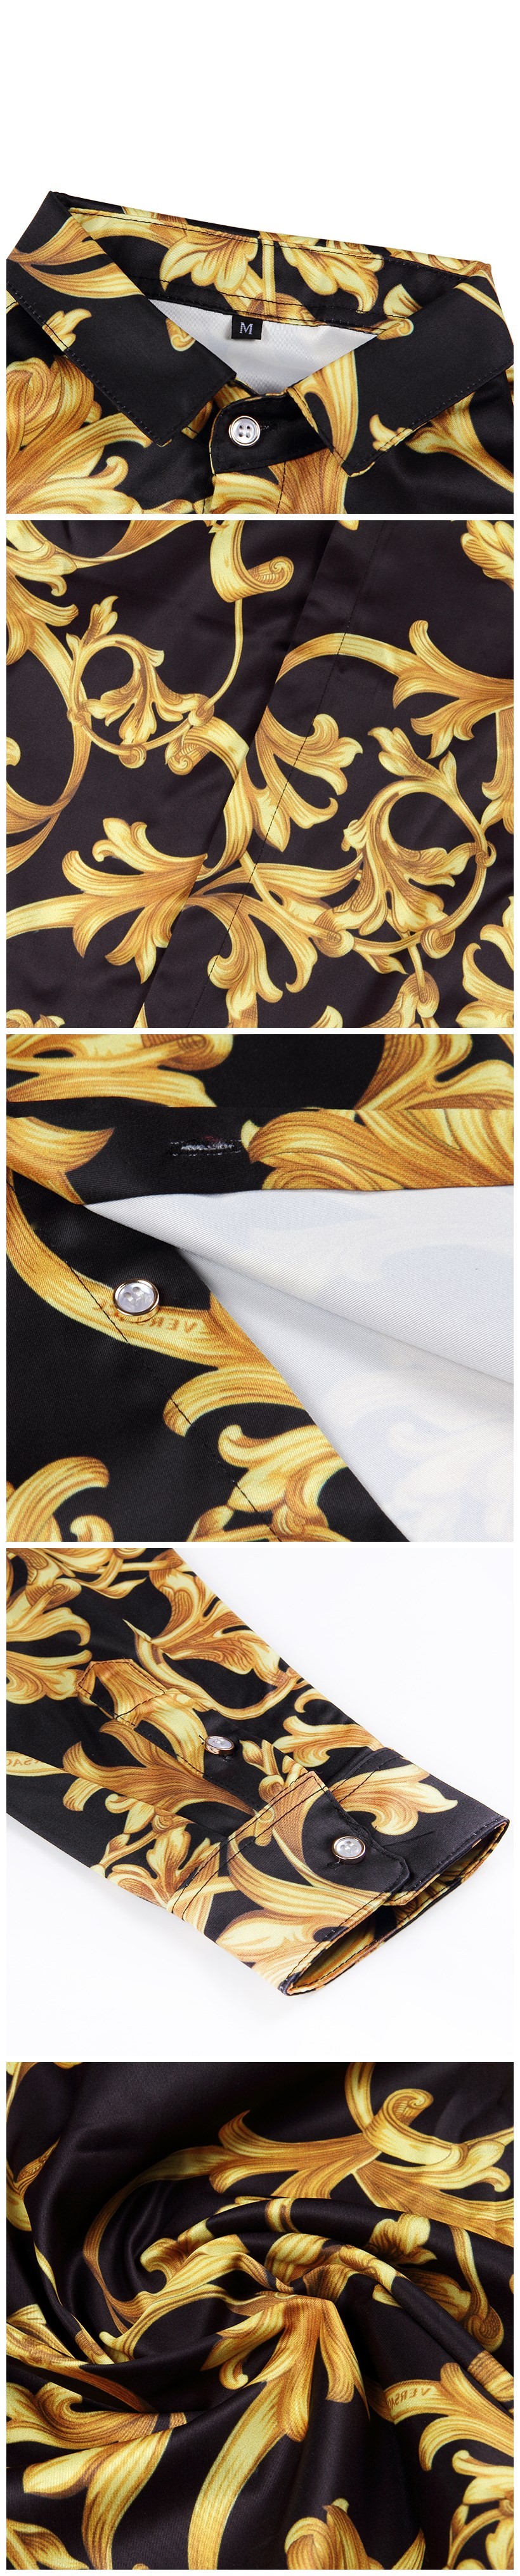 Unique Brand Design Men\'s Gold Shirt Luxury Long-Sleeved 3D Flower Slim Man Fancy Tuxedo Shirts M-XXL Baroque Royal Men Clothes (5)